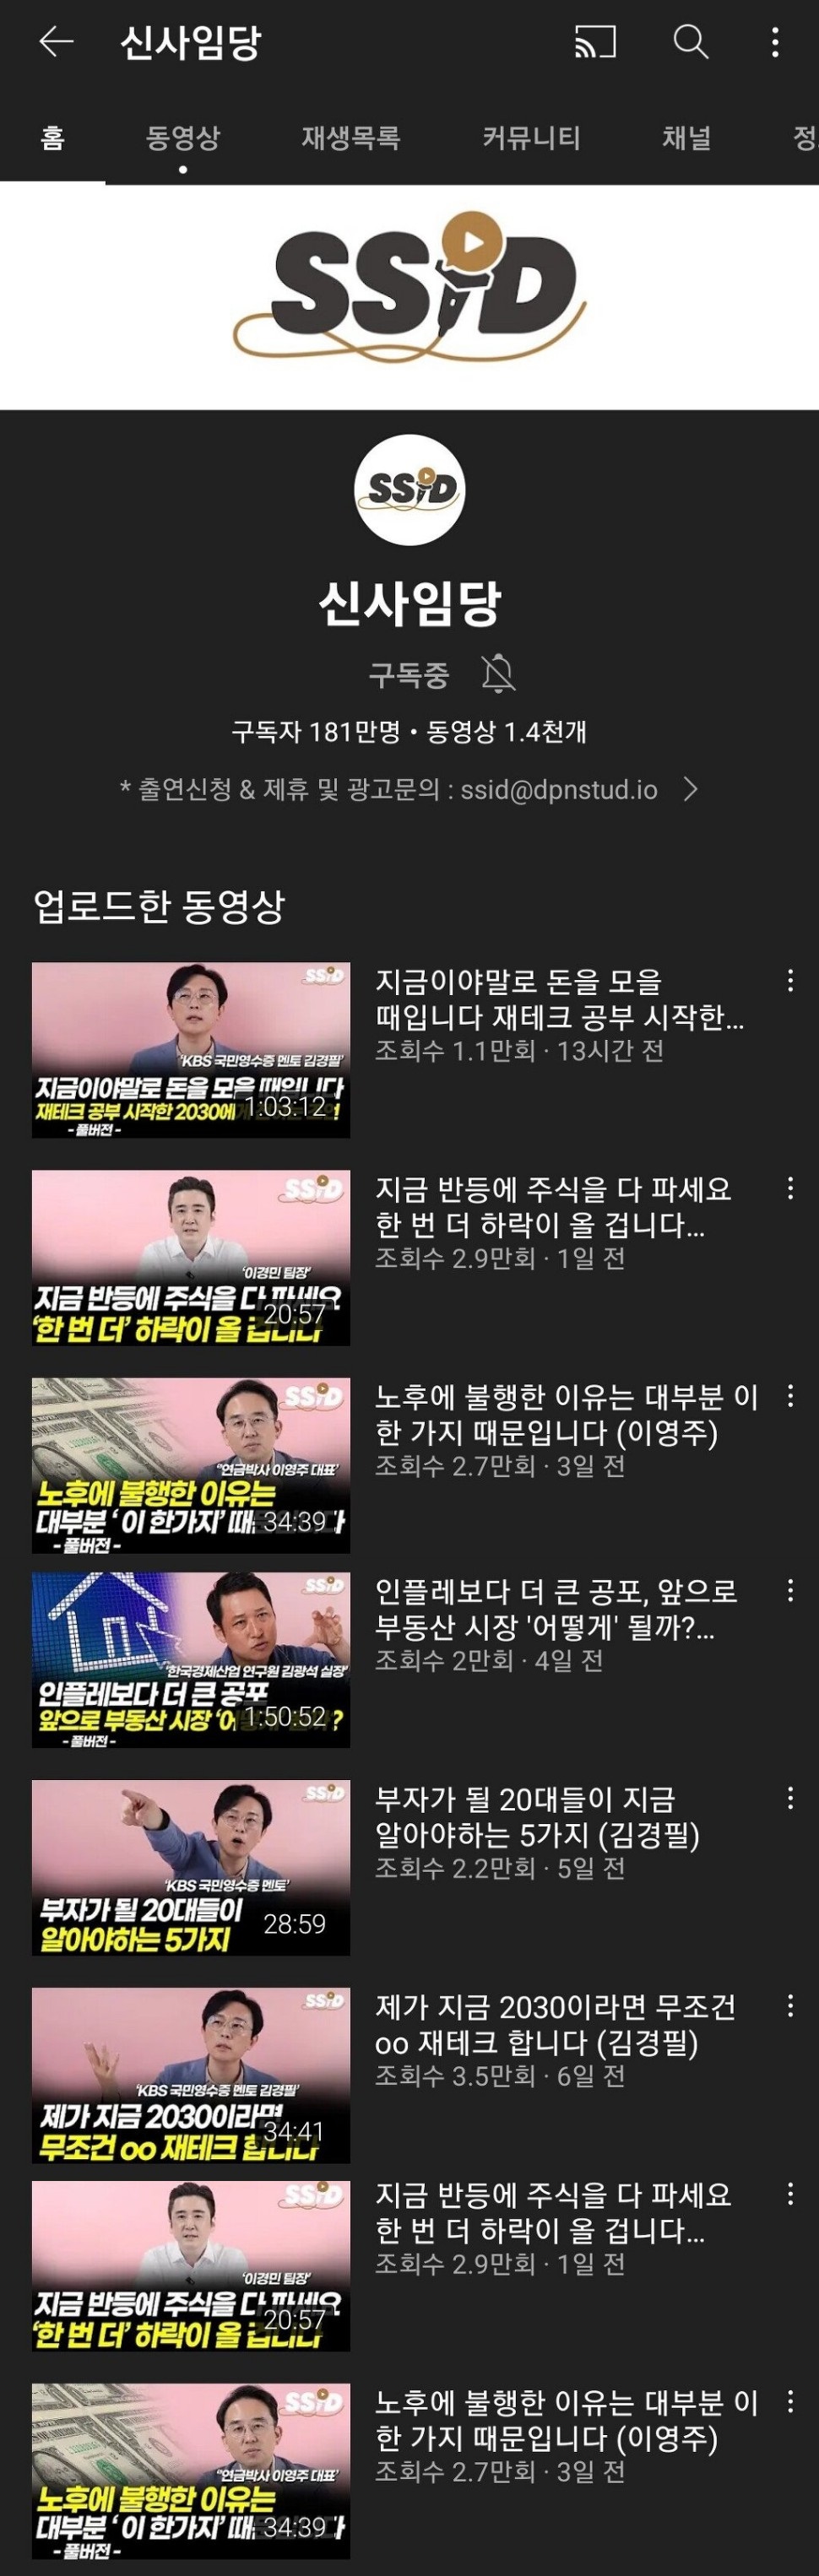 20억에 매각된 '신사임당' 유튜브채널 근황